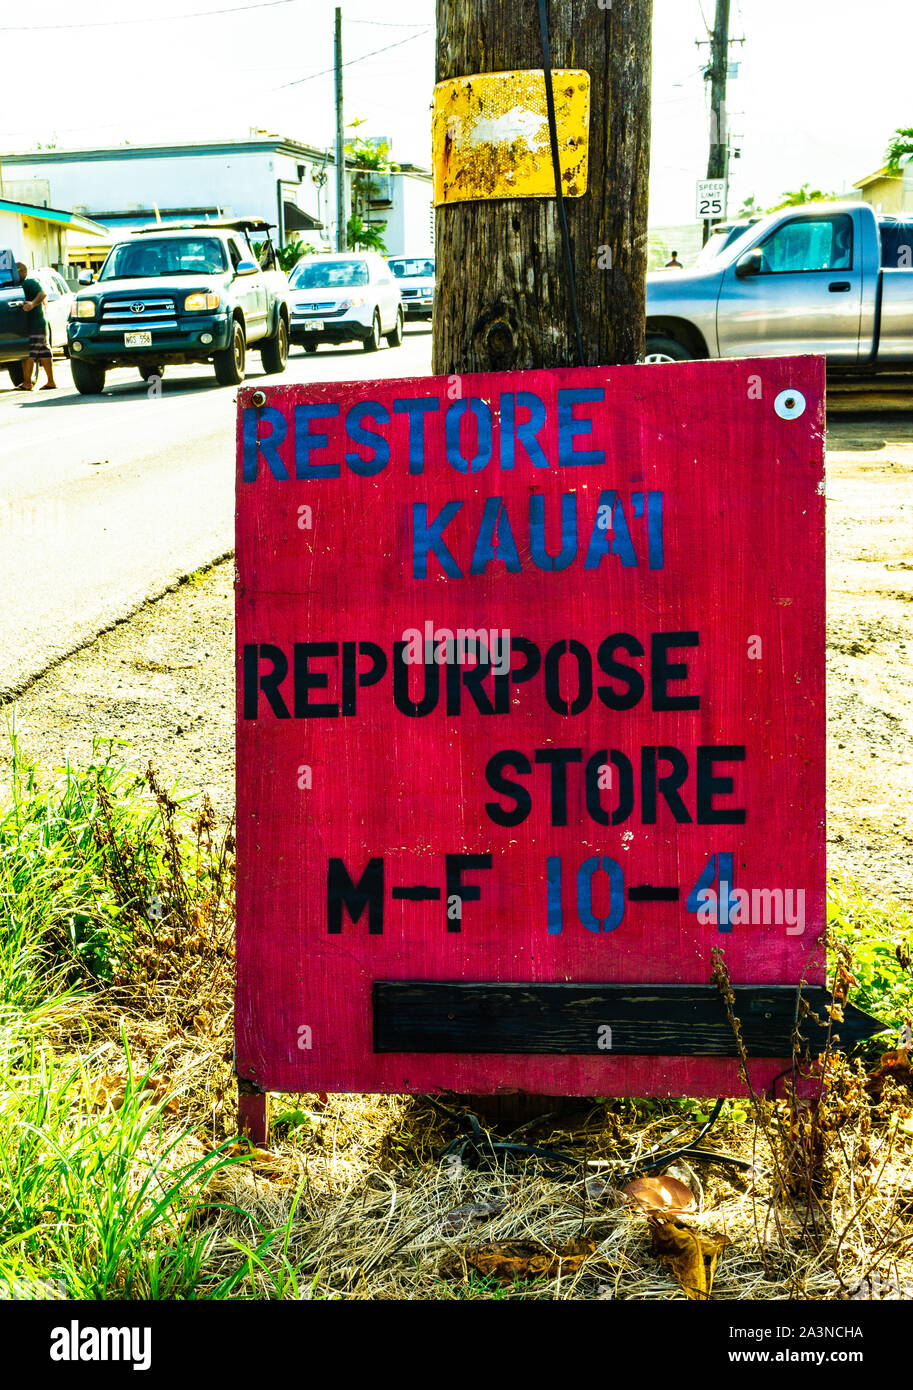 auditie fusie Discipline Repurpose store, Kappa, Kauai, Hawaii, USA Stock Photo - Alamy